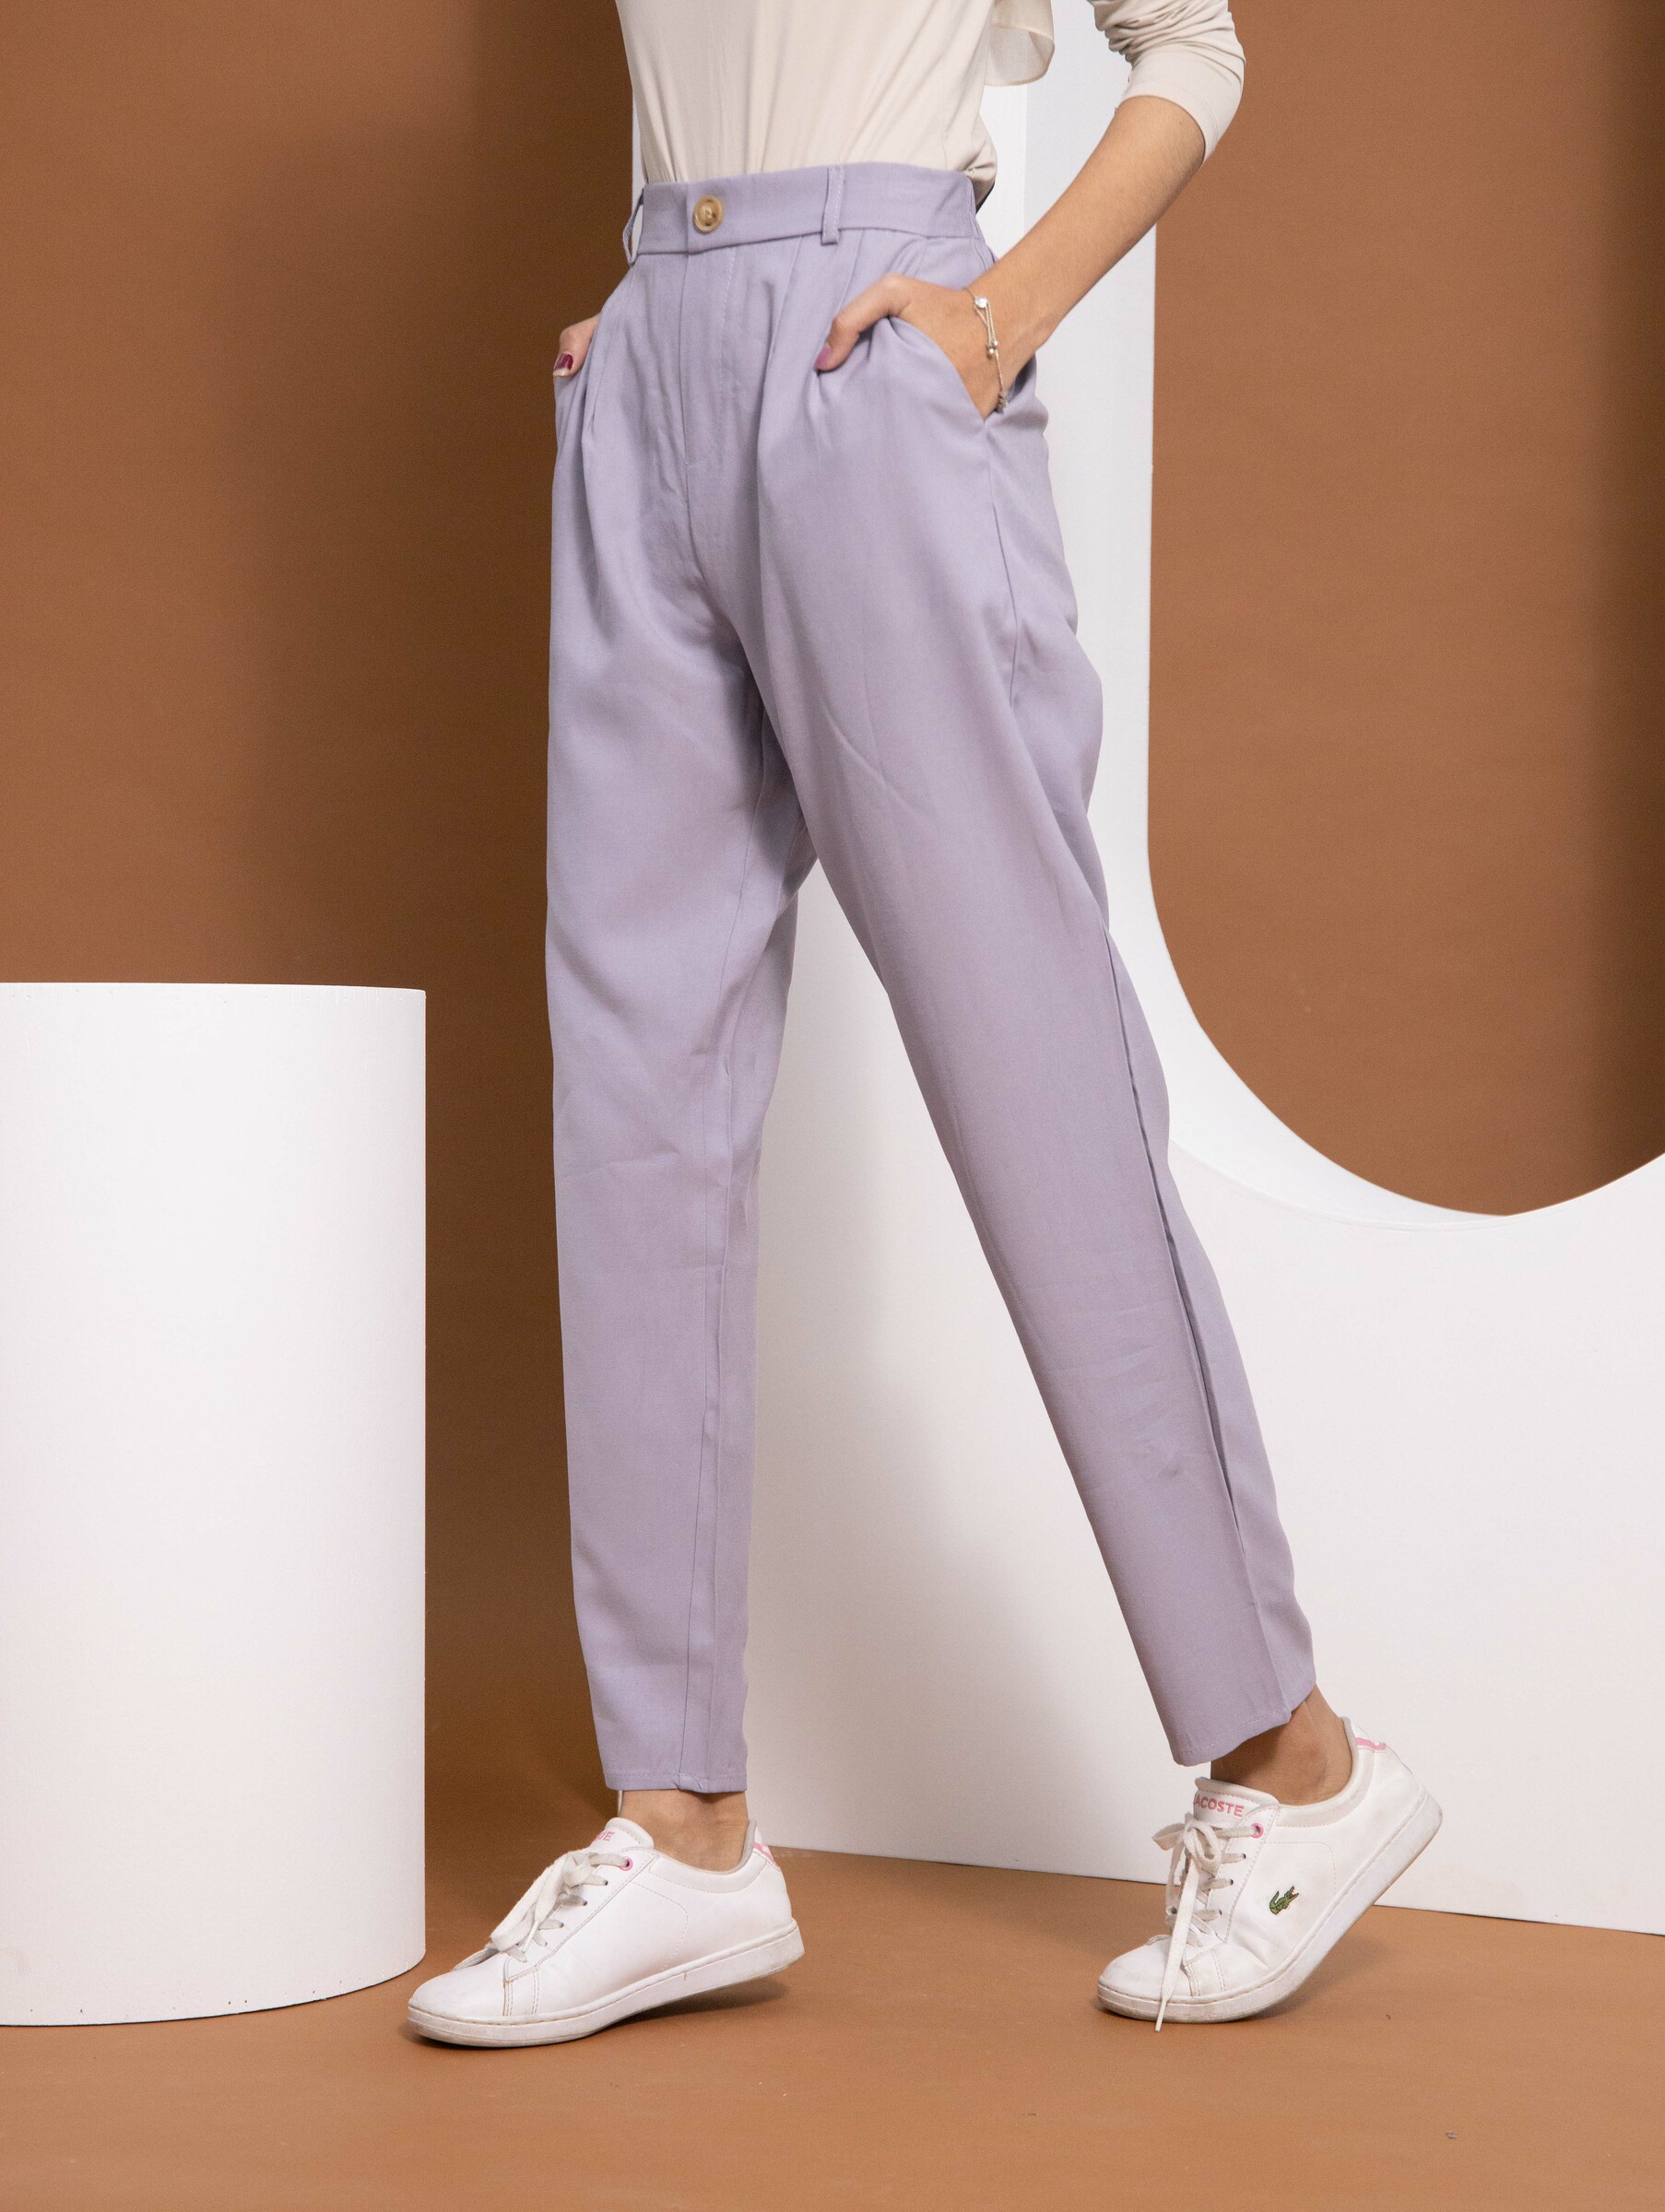 haura-wear-neeta-slim-straight-cotton-long-pants-seluar-muslimah-seluar-perempuan-palazzo-pants-sluar (4).jpg